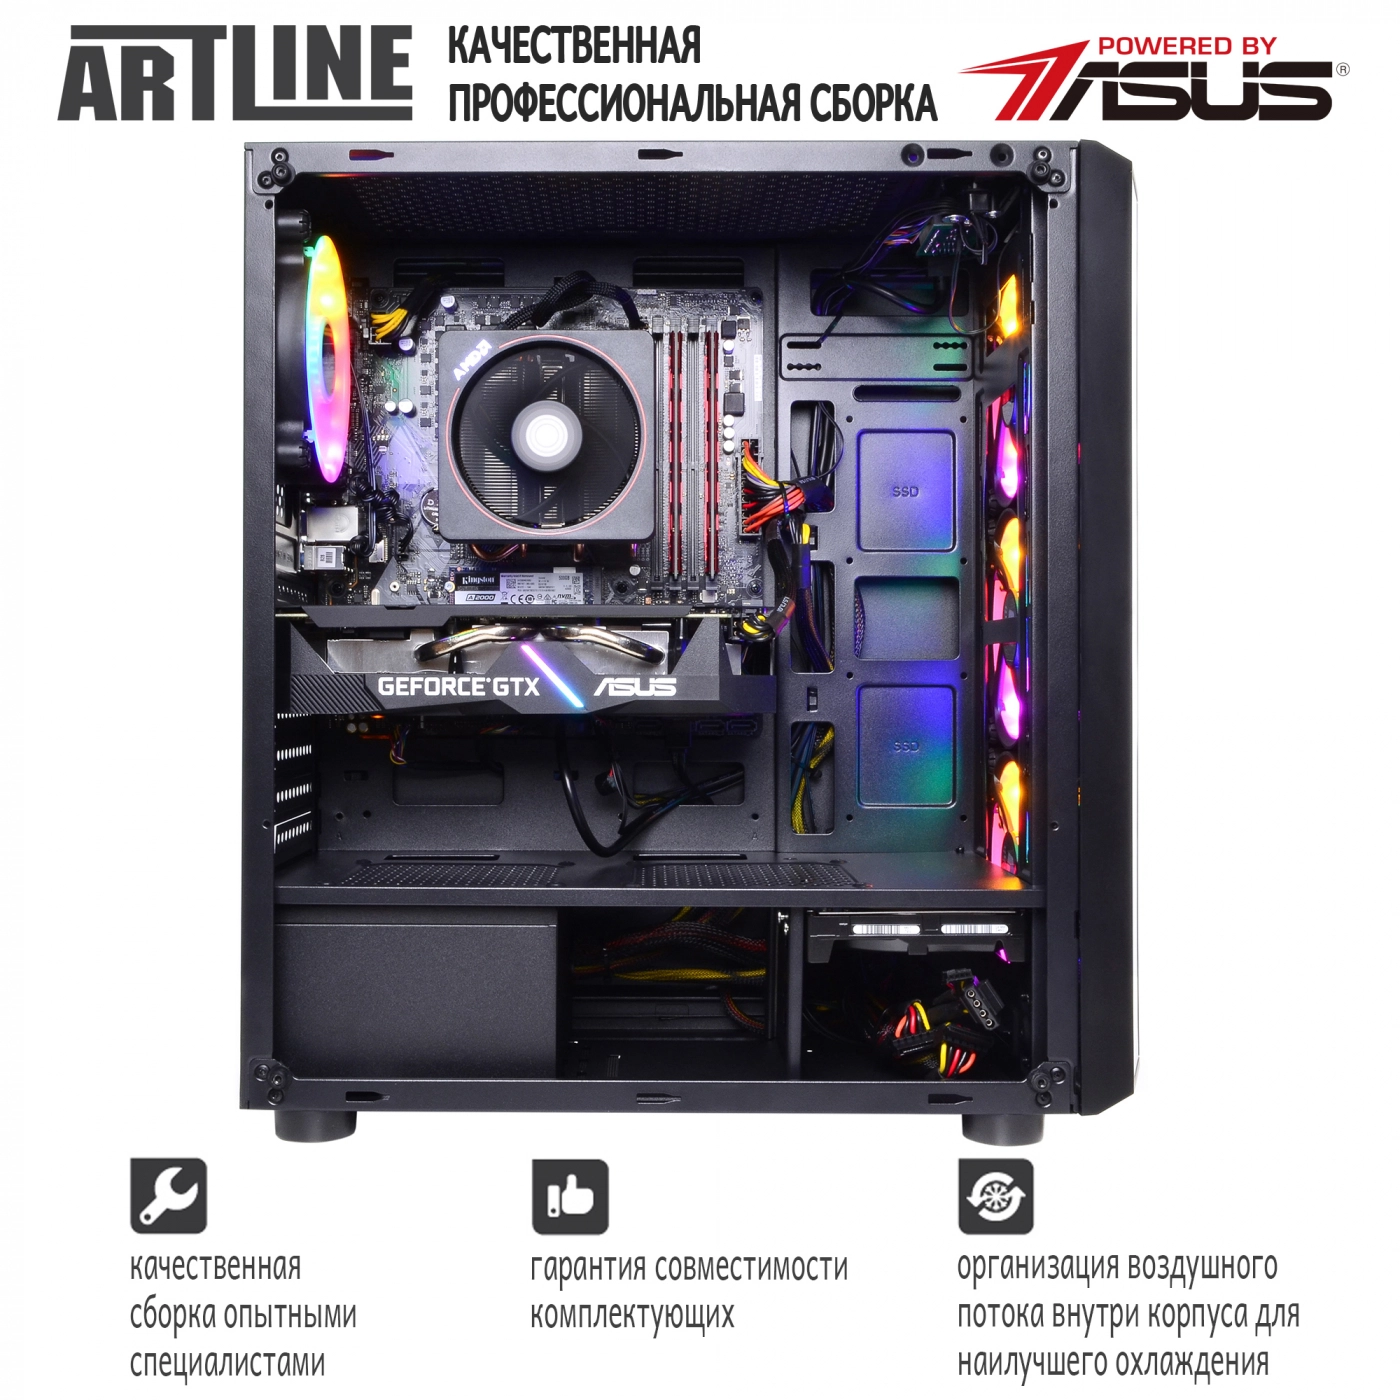 Купить Компьютер ARTLINE Gaming X46v35 - фото 8